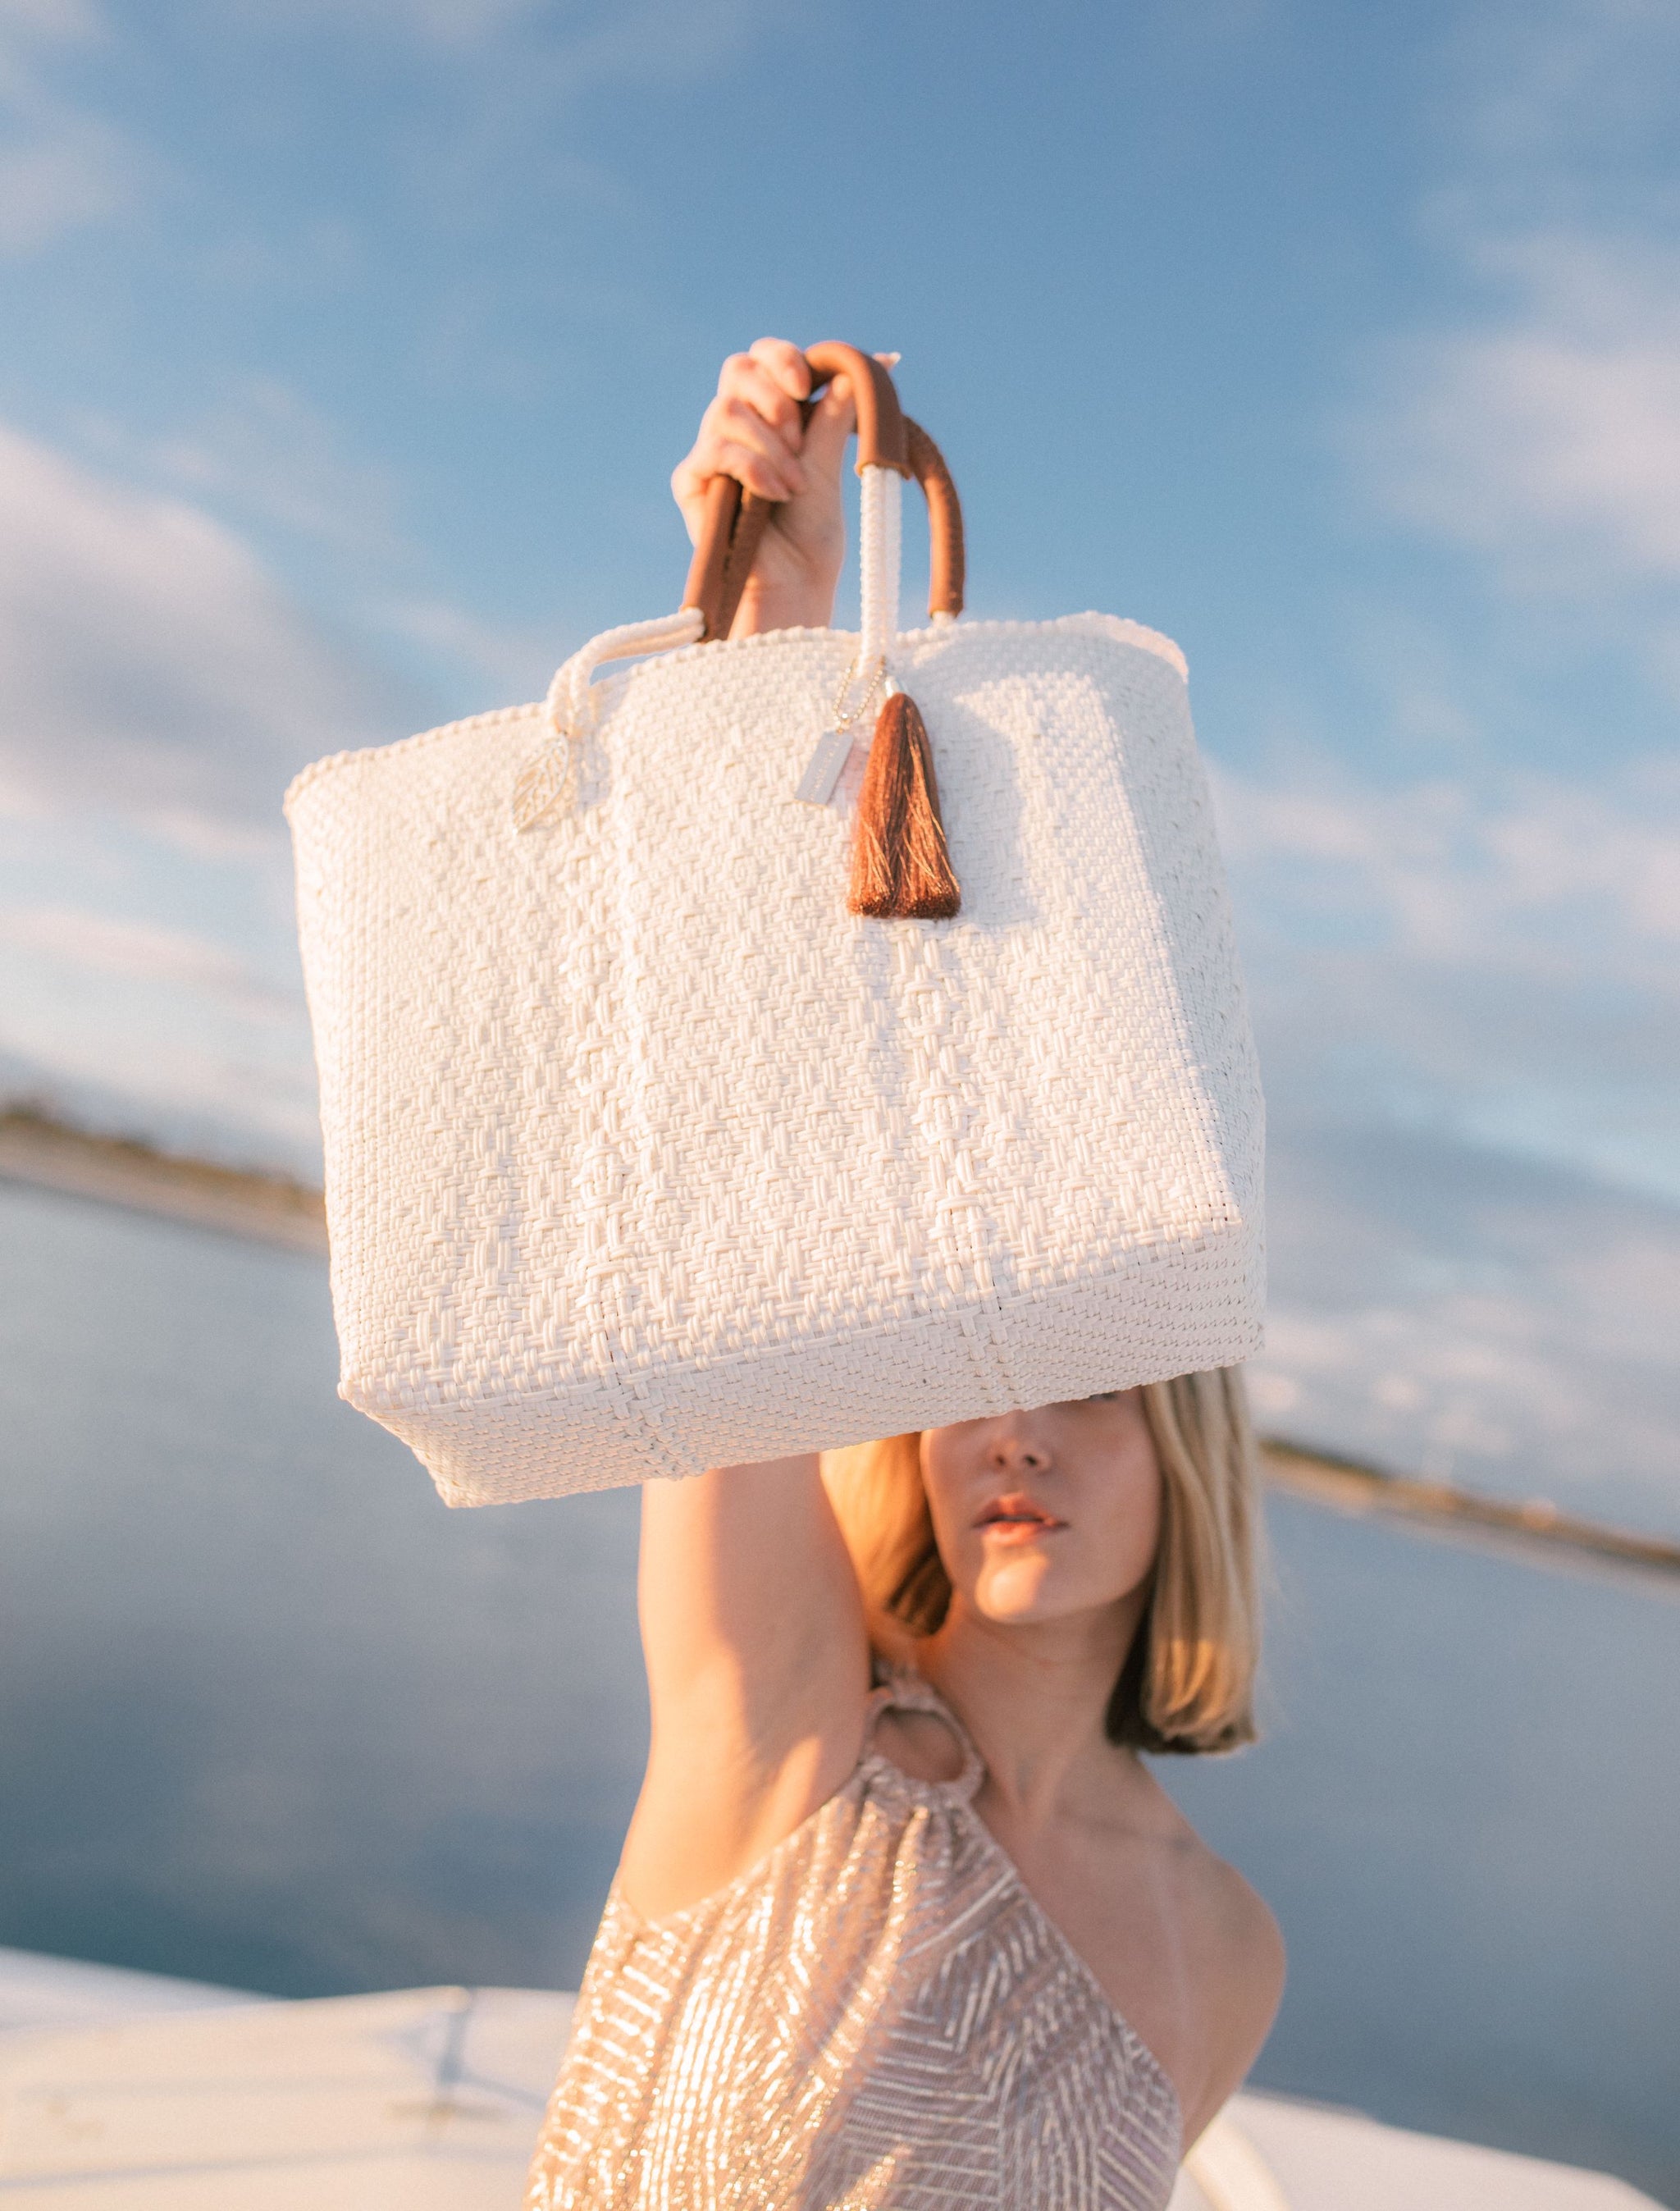 Large Pearl Canvas Resort Tote Bag